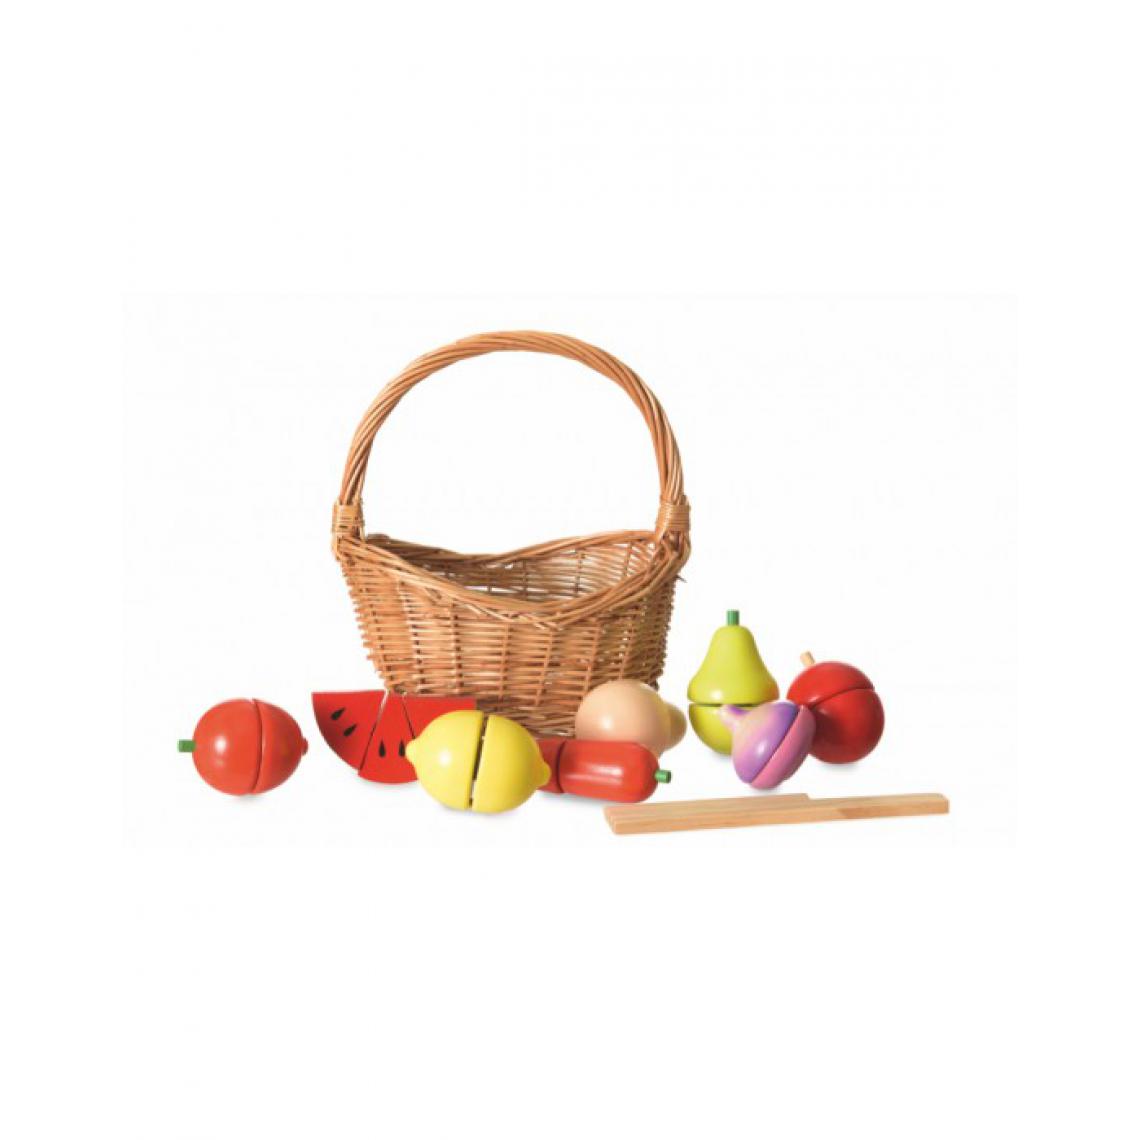 Egmont Toys - Set de fruits et legumes en bois dans son panier - Jeux éducatifs